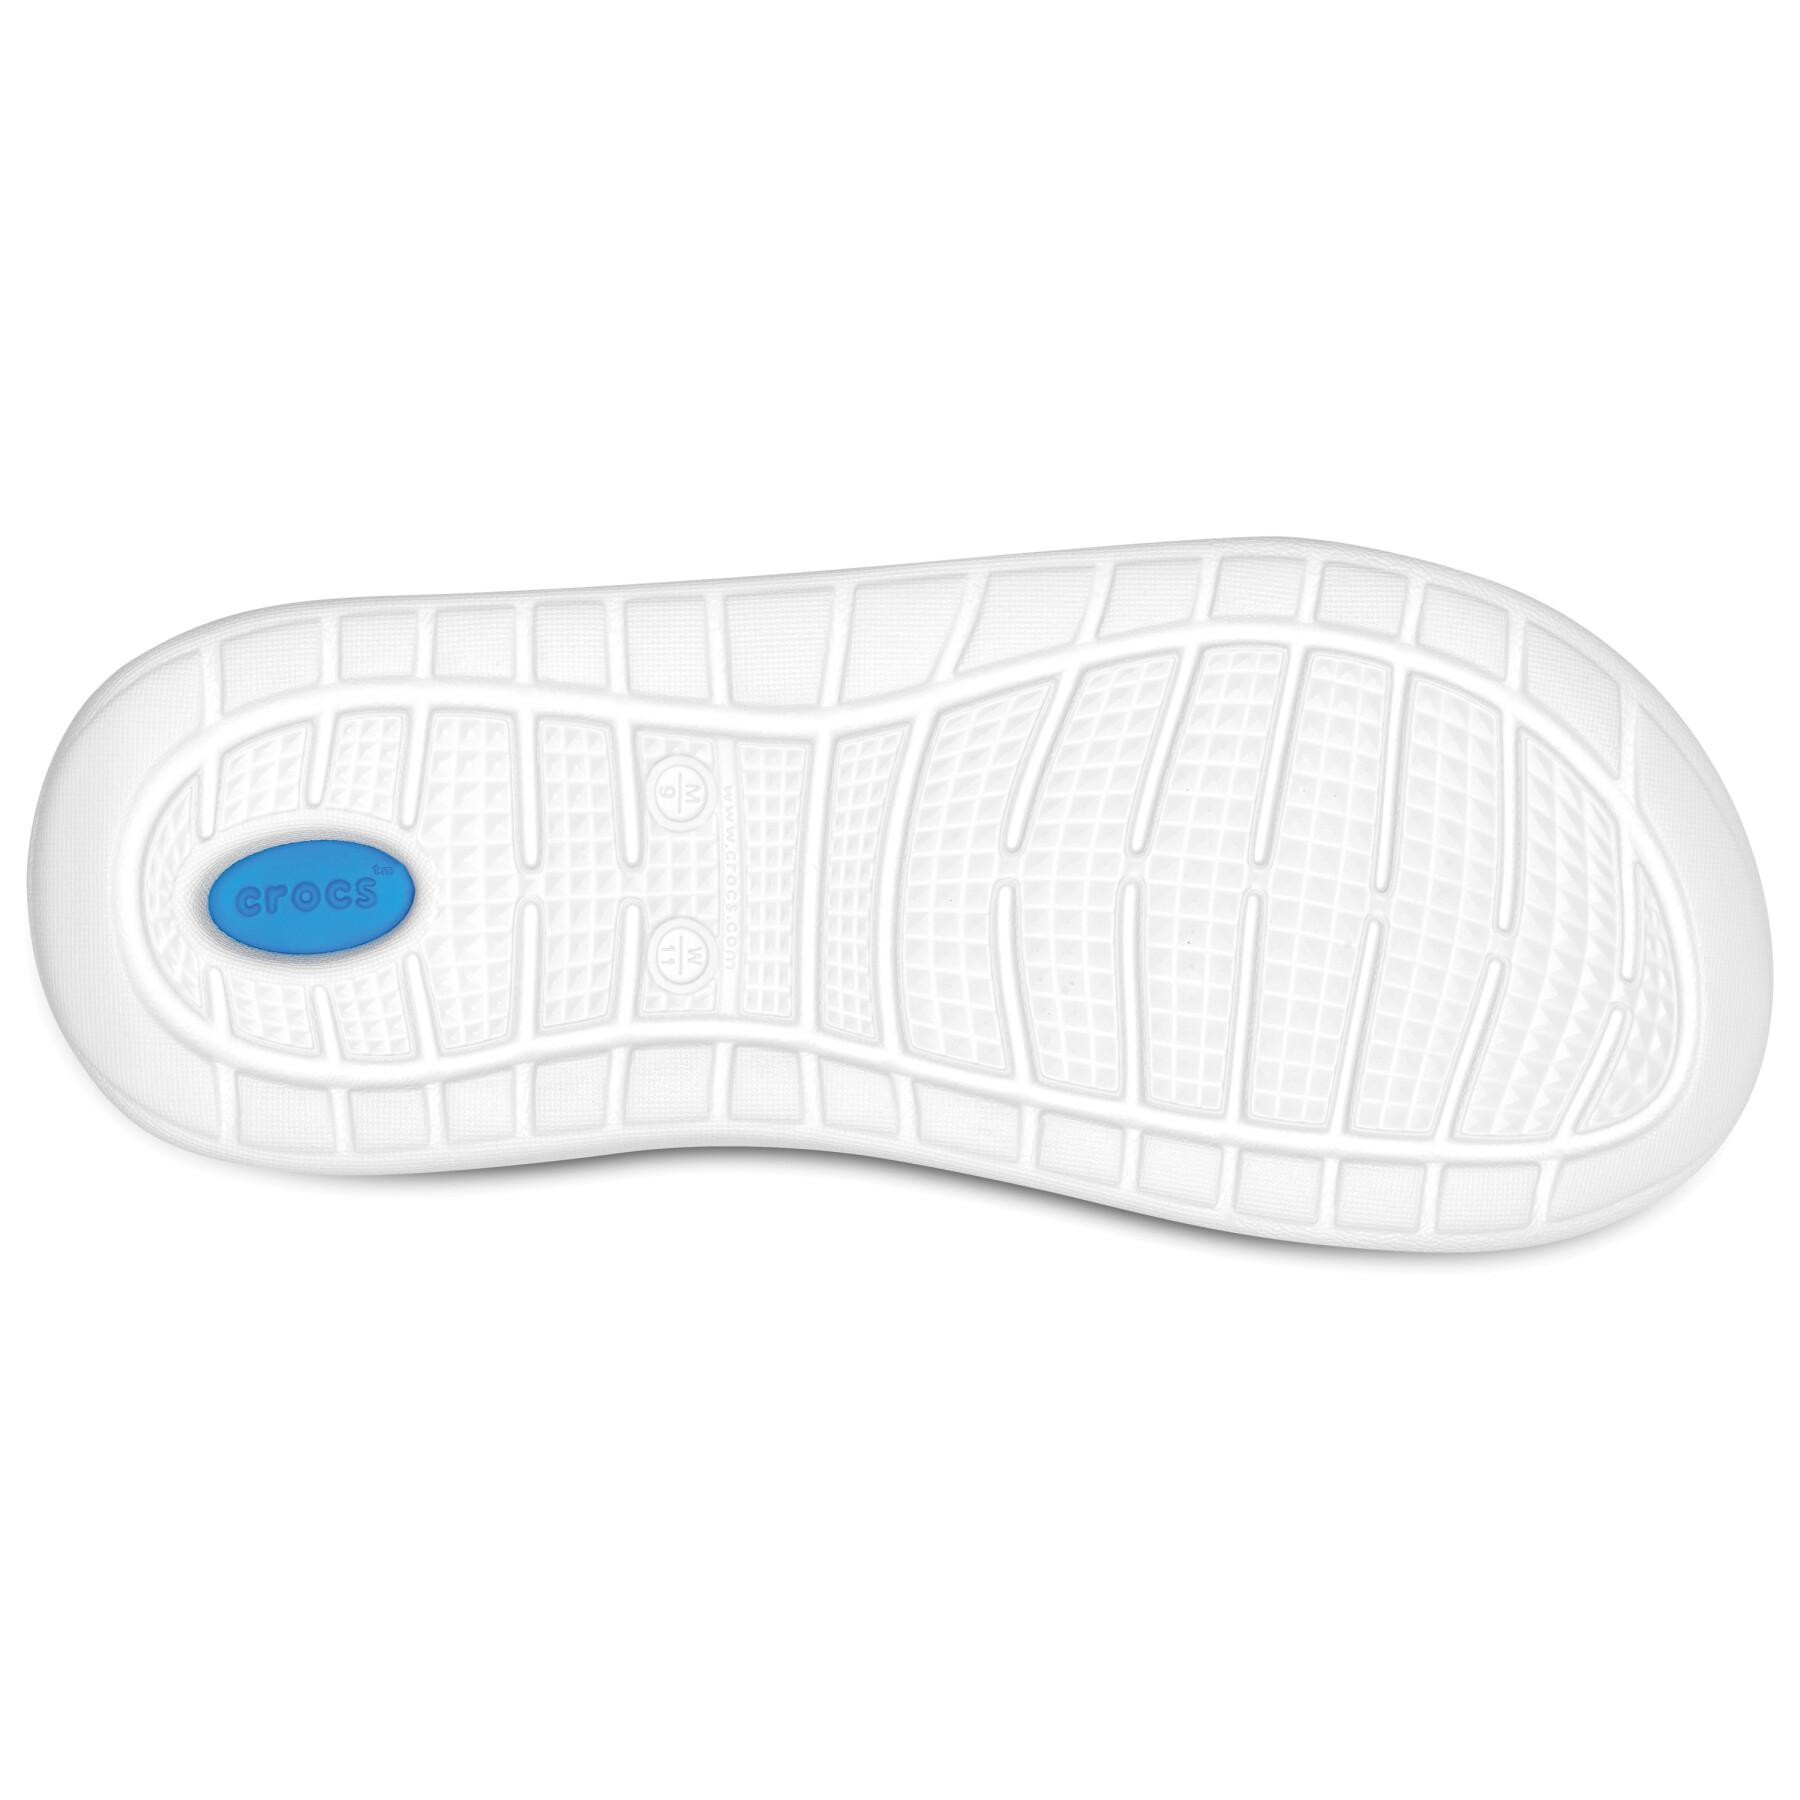 Tap shoes Crocs Literider slide